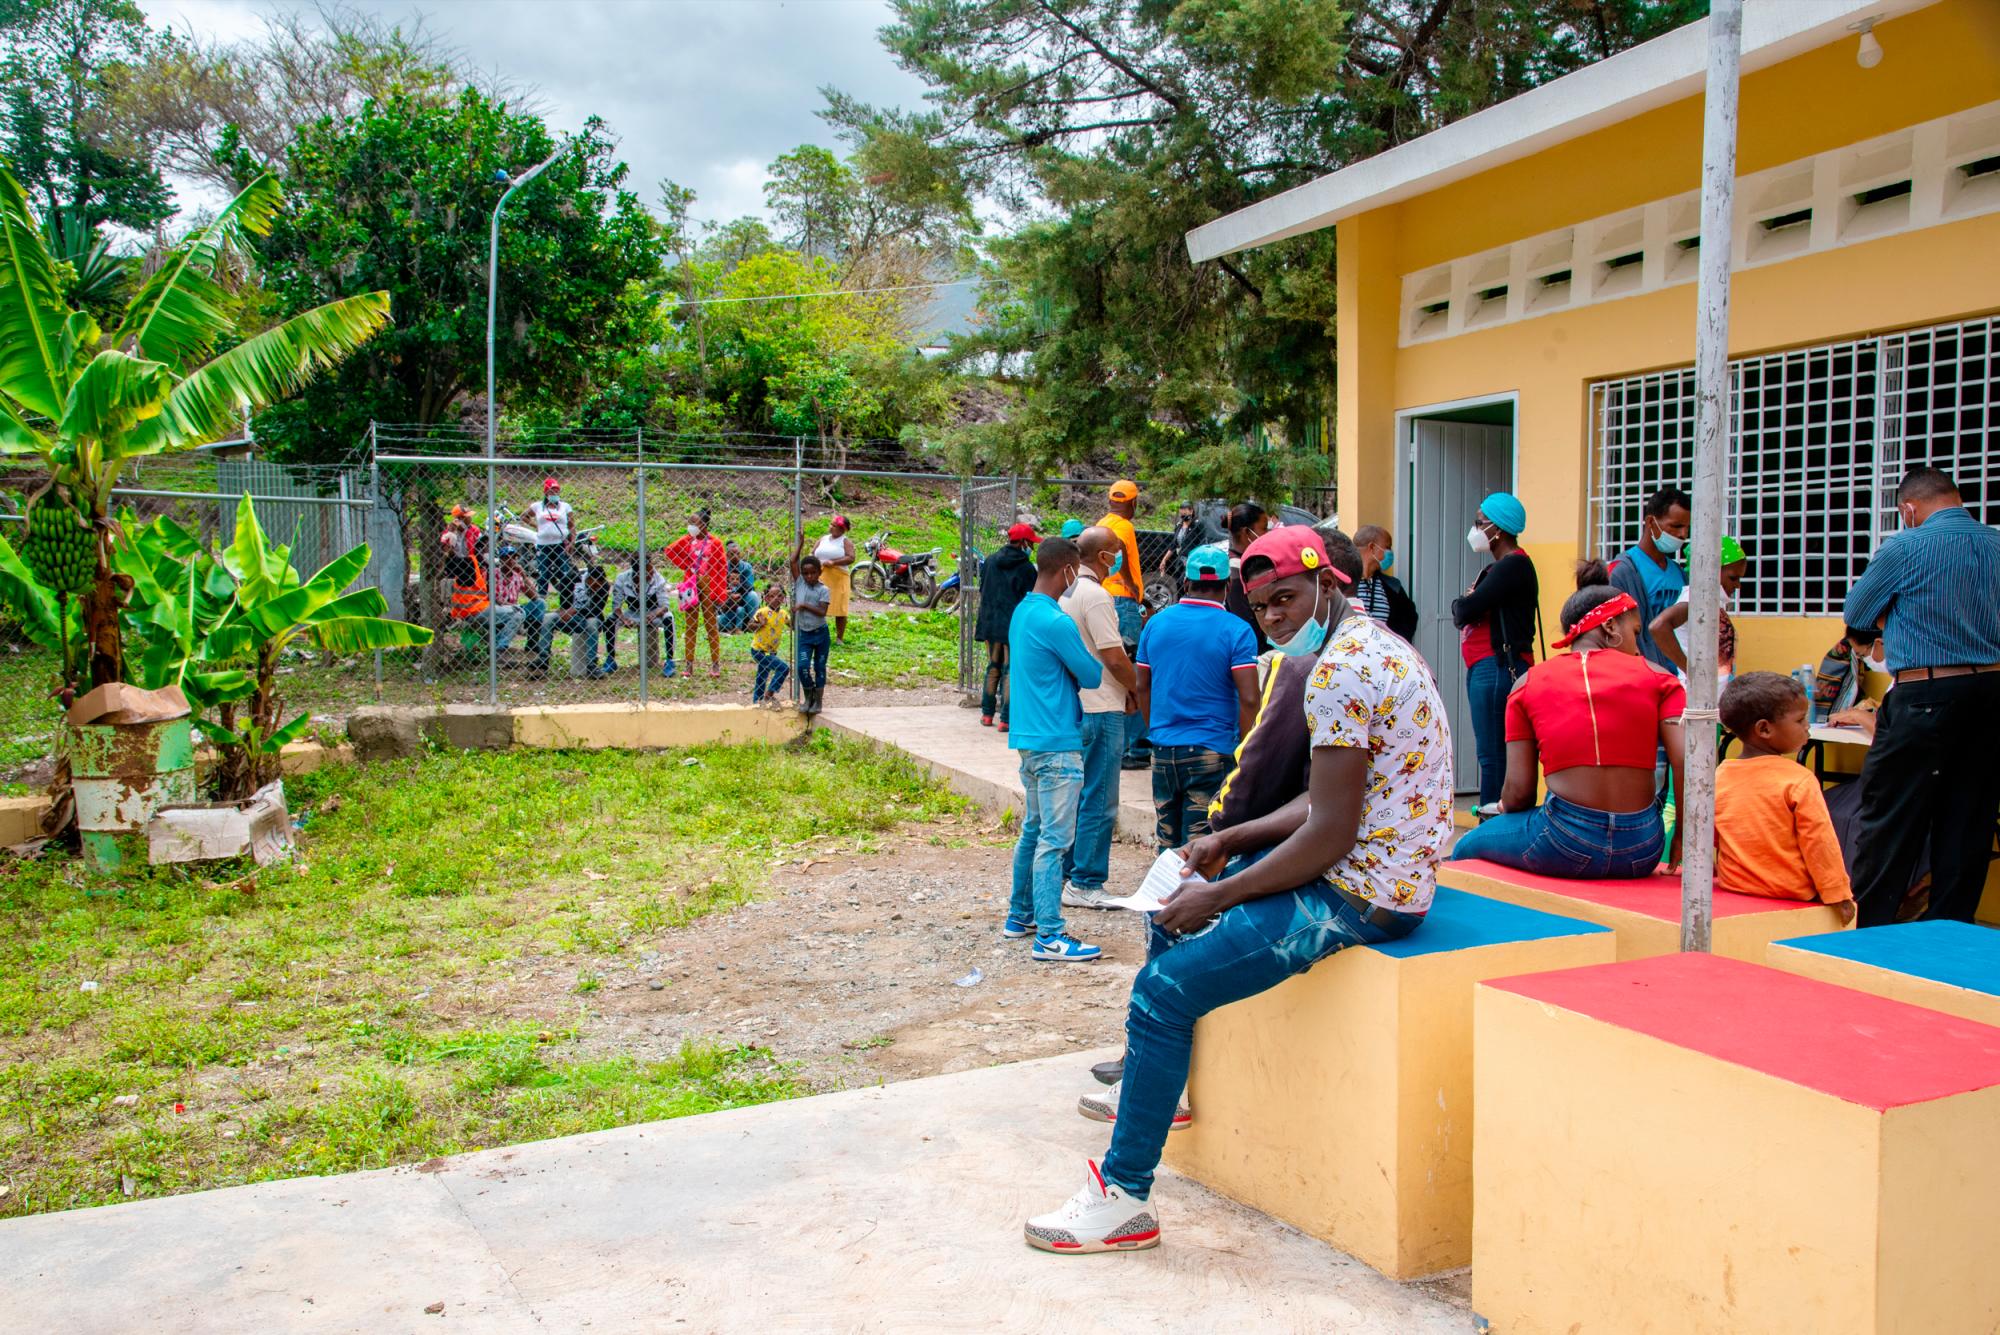 La falta de documentación no solo afecta a los descendientes de los nativos de esta parte de la isla, sino también aquellos de ascendencia haitiana, en mayor vulnerabilidad luego de la sentencia 168-13 del Tribunal Constitucional